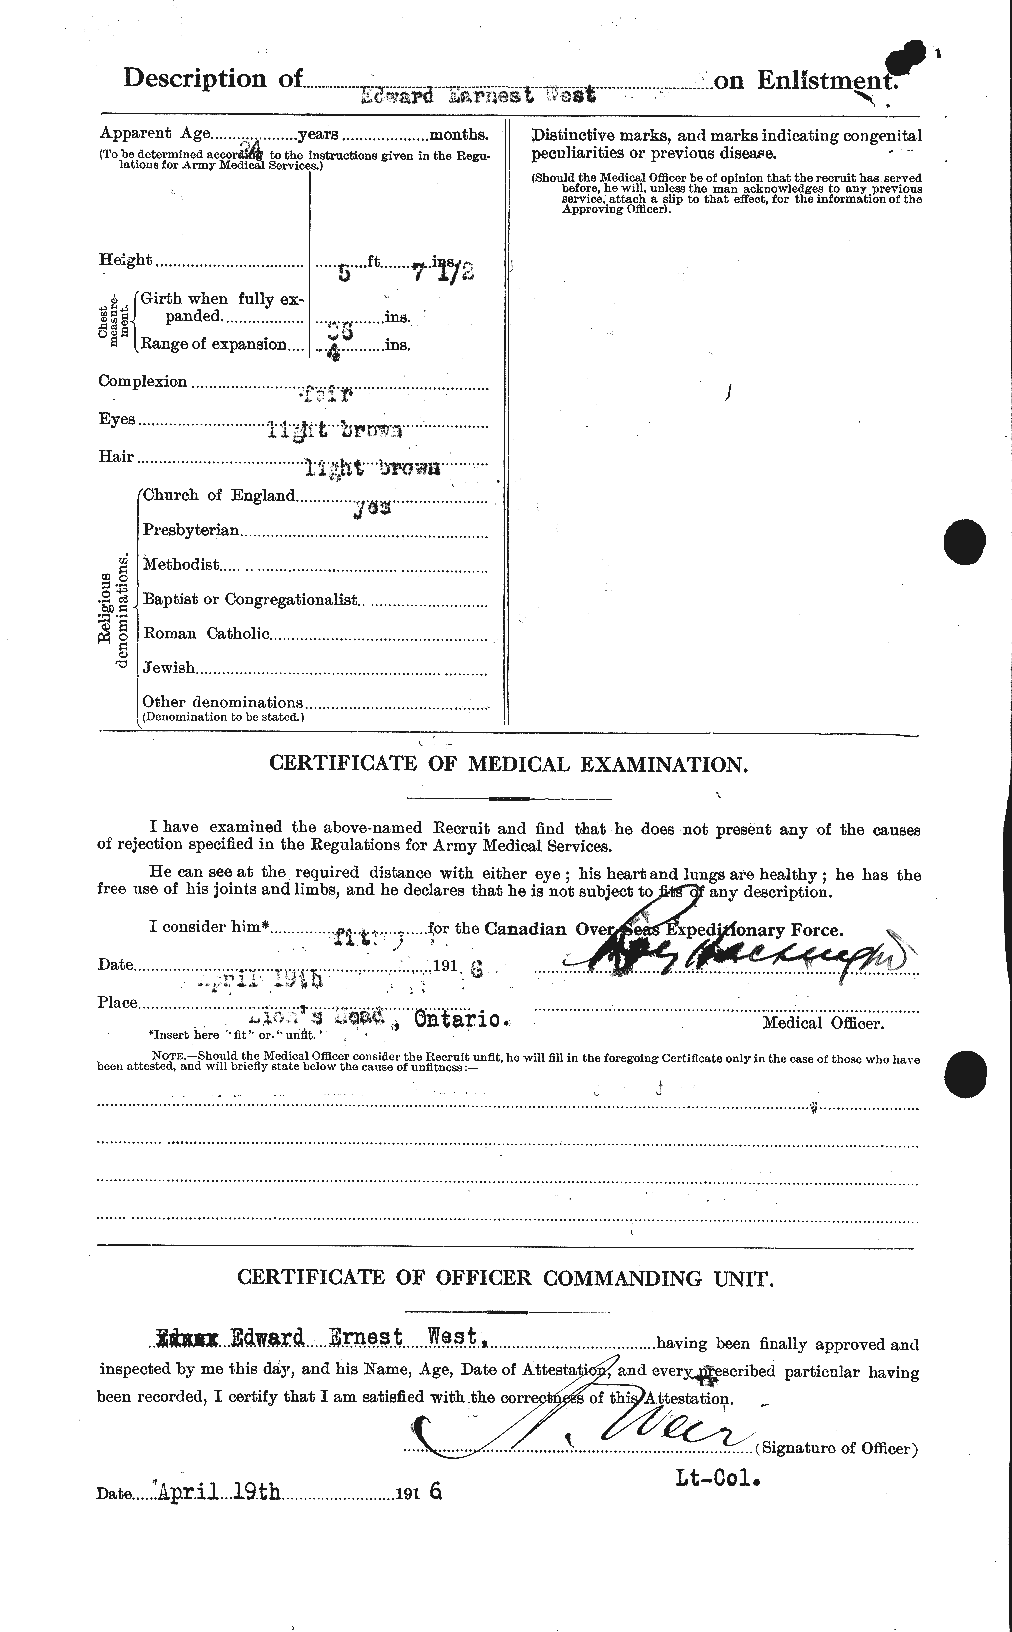 Dossiers du Personnel de la Première Guerre mondiale - CEC 666121b